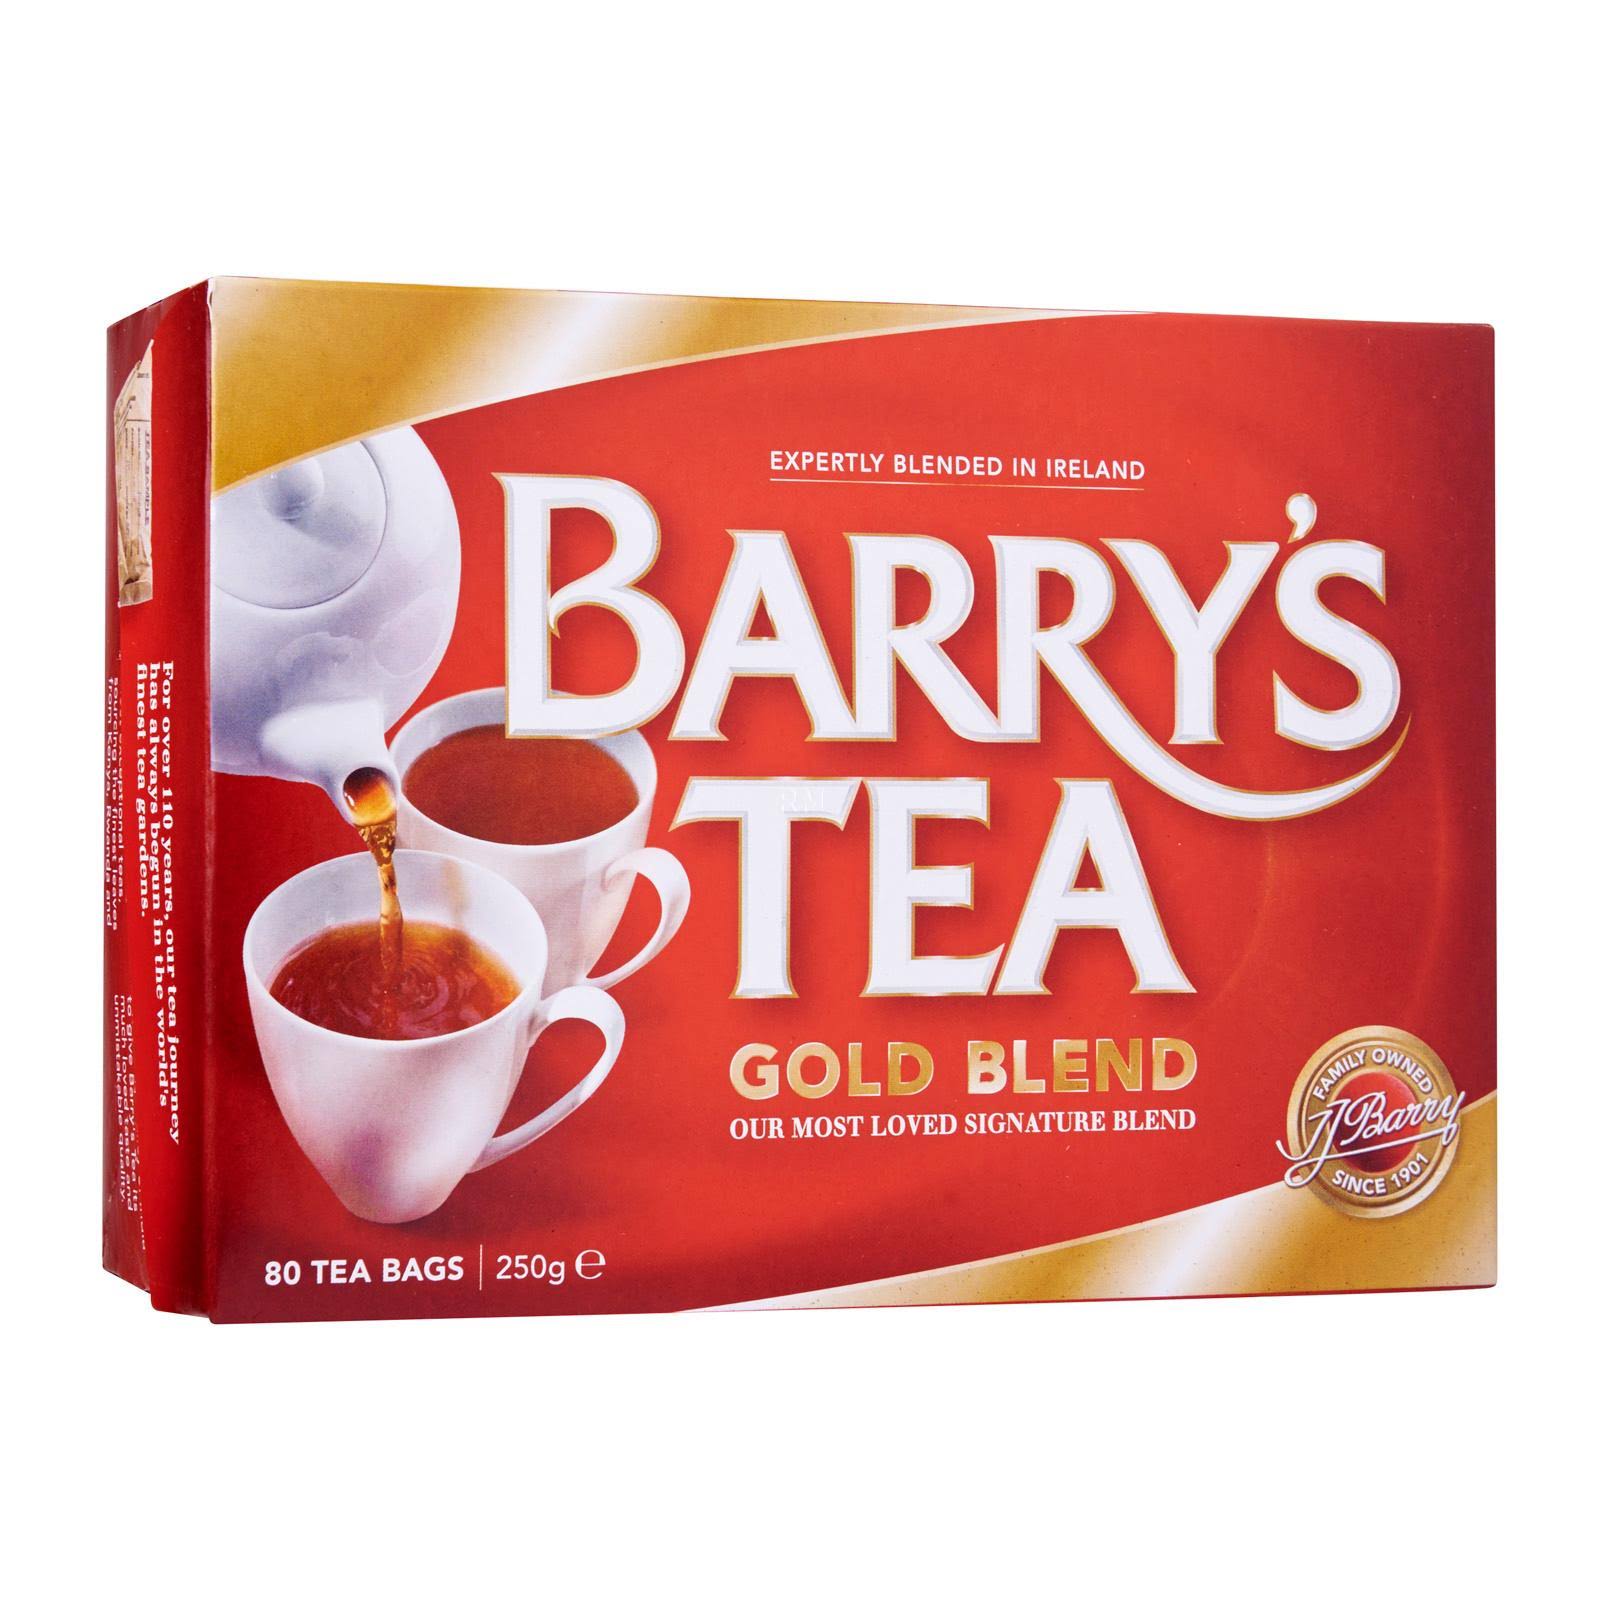 Barry's Tea Gold Blend Tea - 80 Teabags